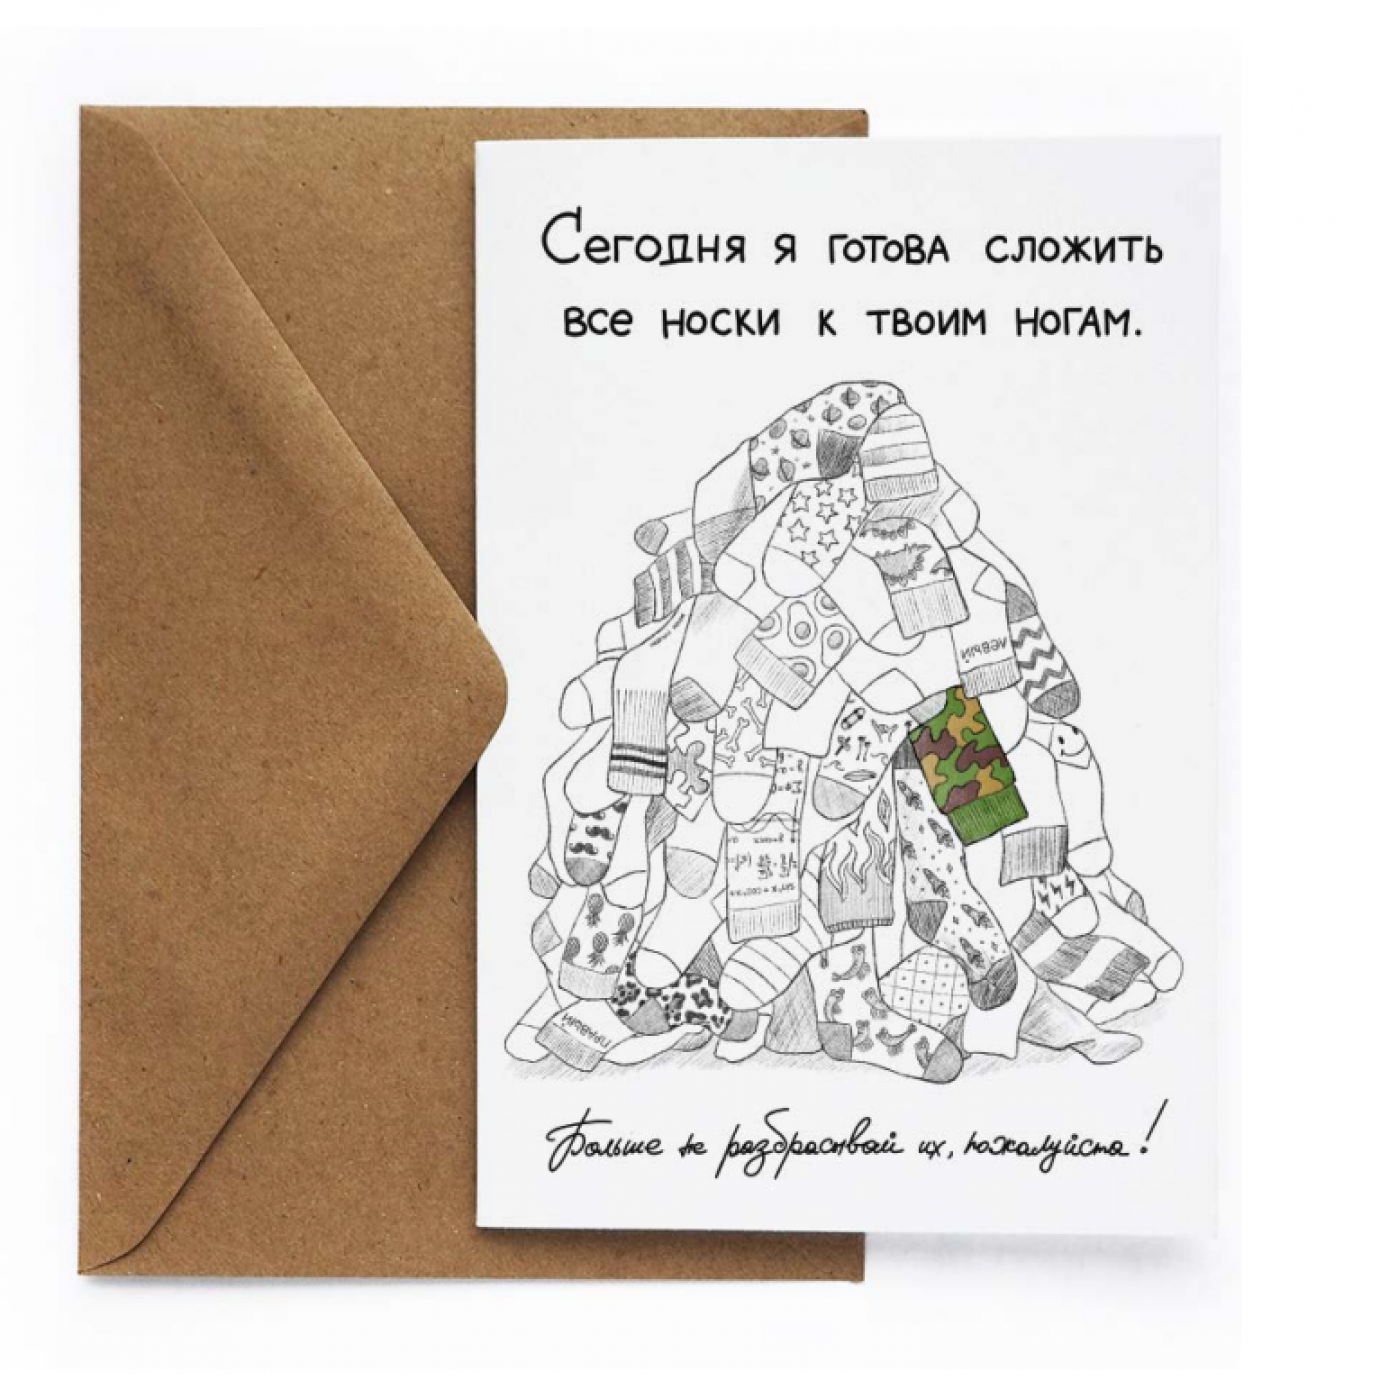 Открытки: купить в Новосибирске оптом и в розницу, цены поздравительных открыток